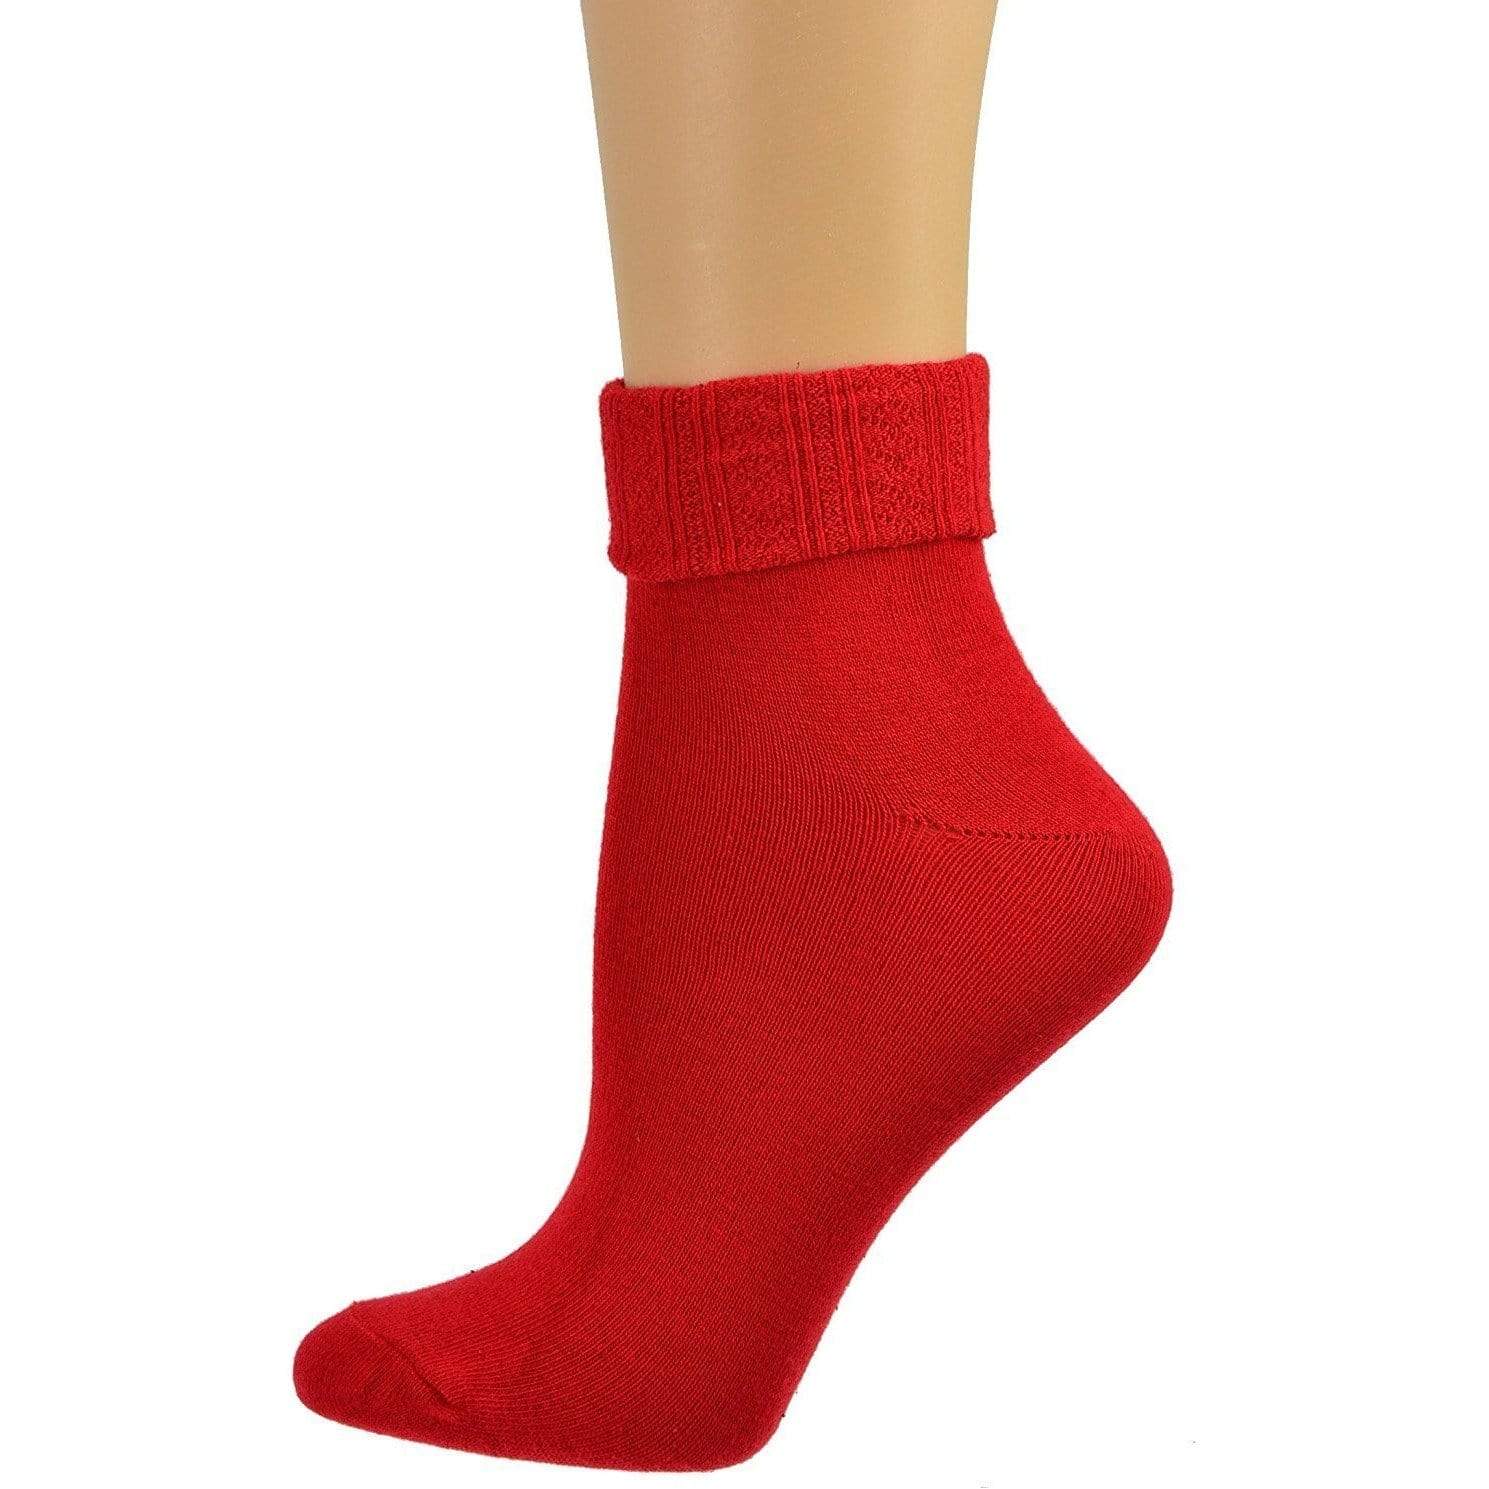 Colorful Socks - Sierra Socks Women Triple Cuff Crew Cotton